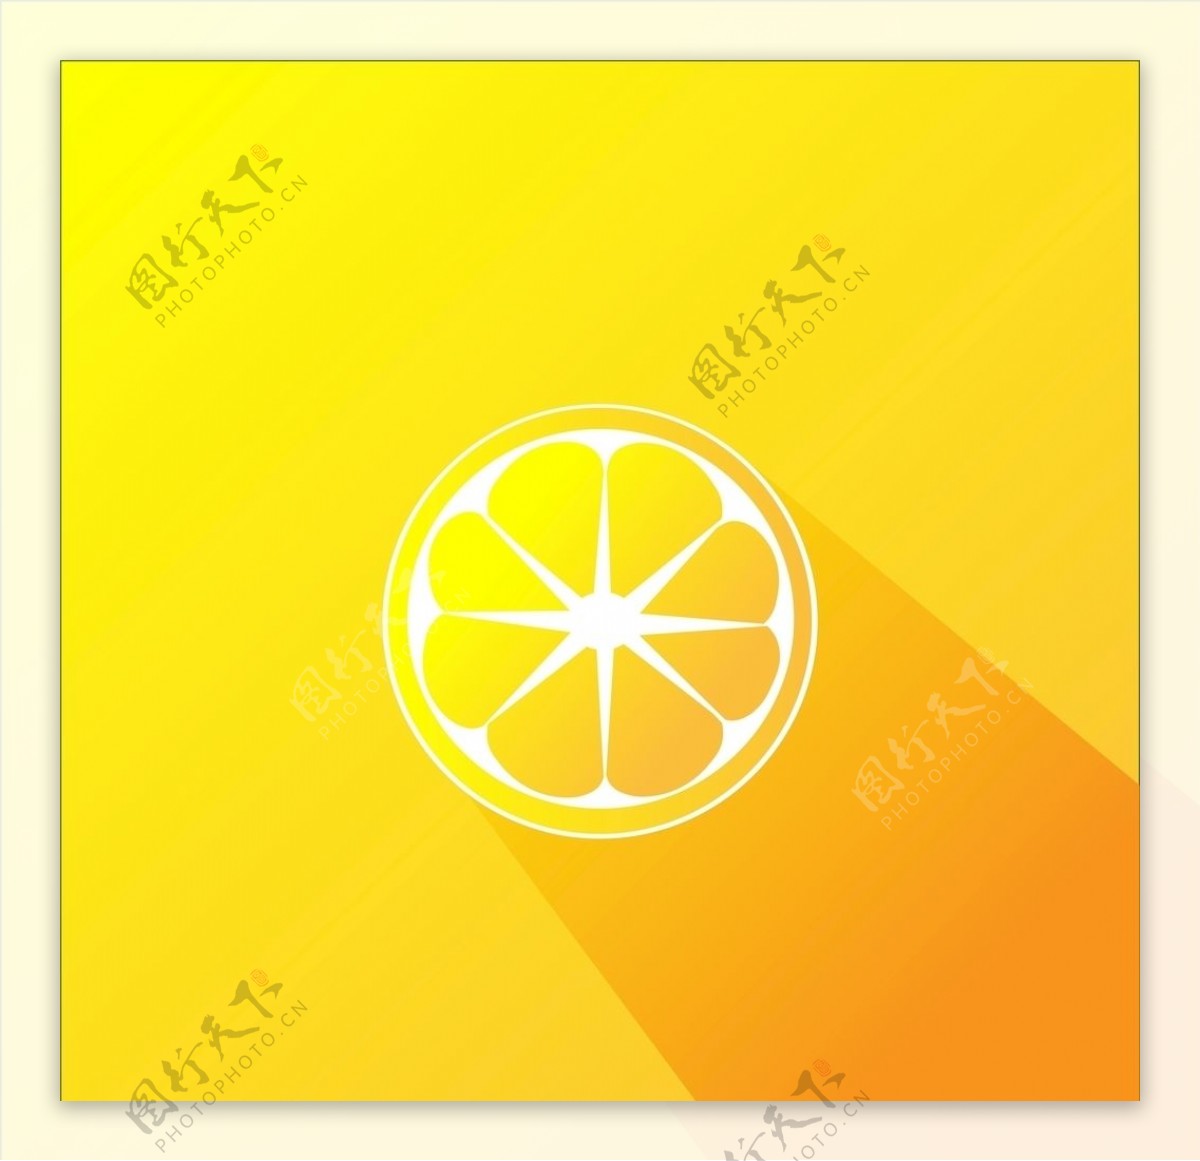 橘子柠檬插图